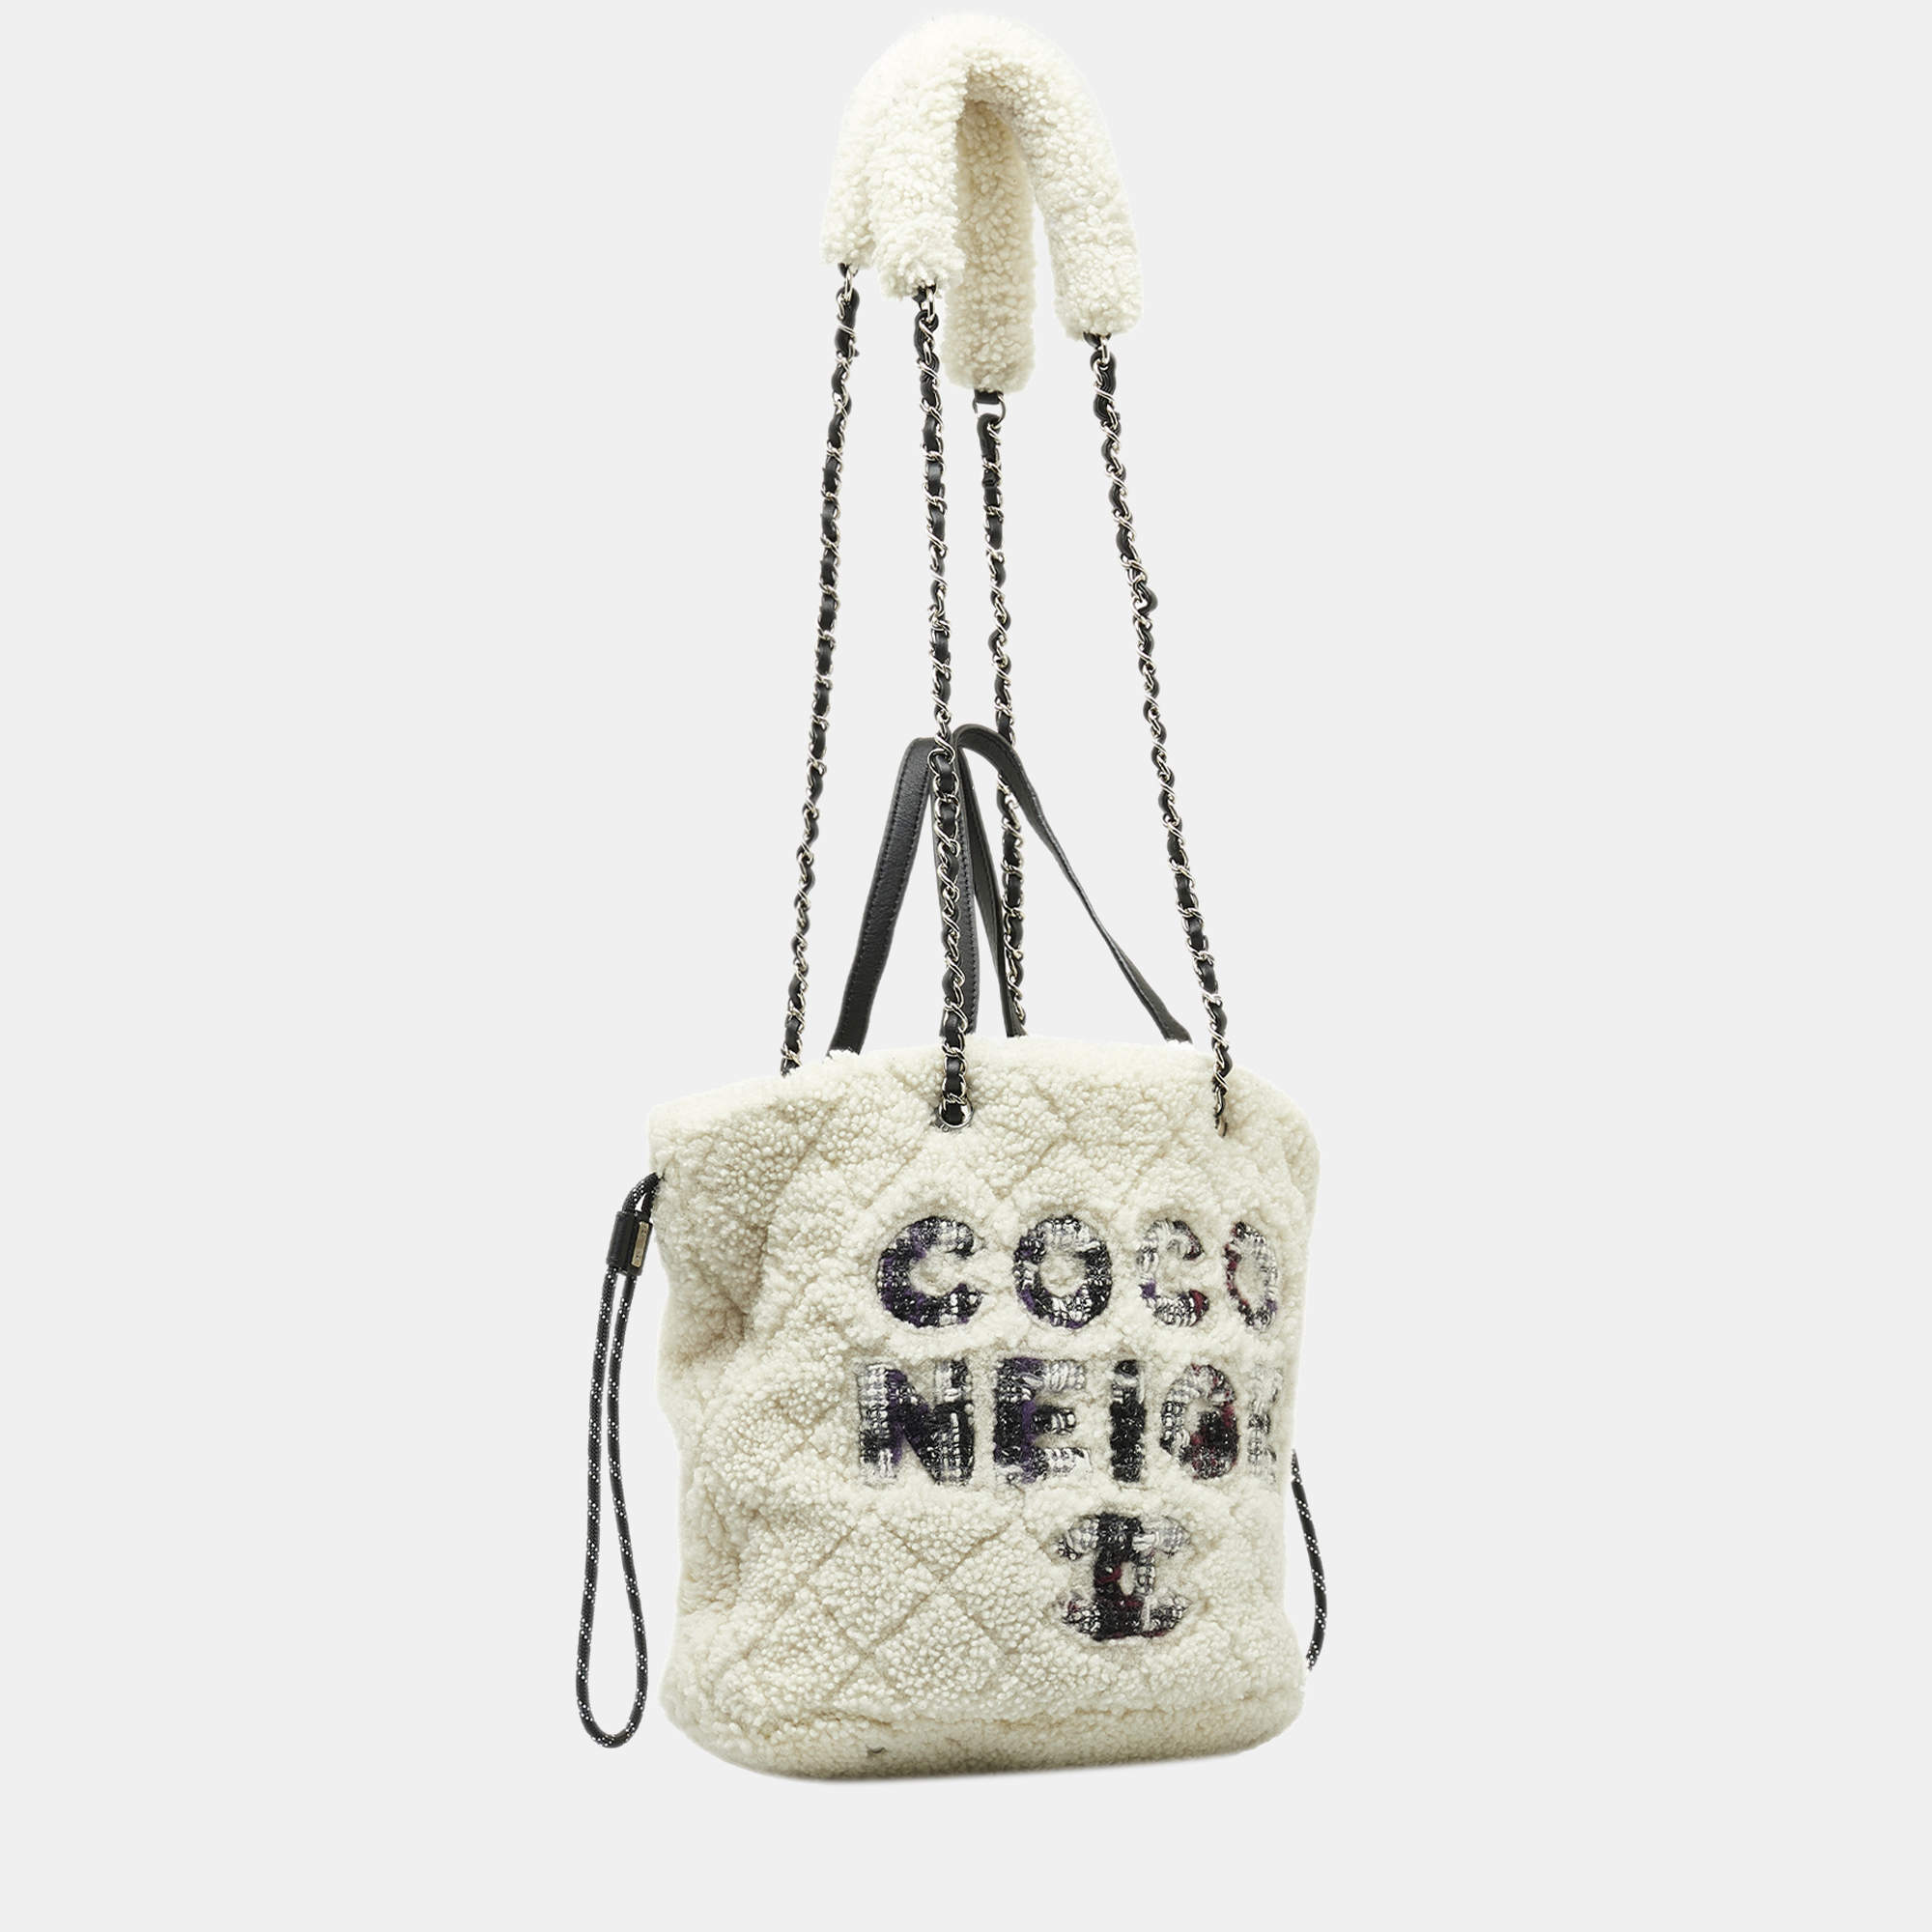 Beautiful Coco Chanel purse handbag